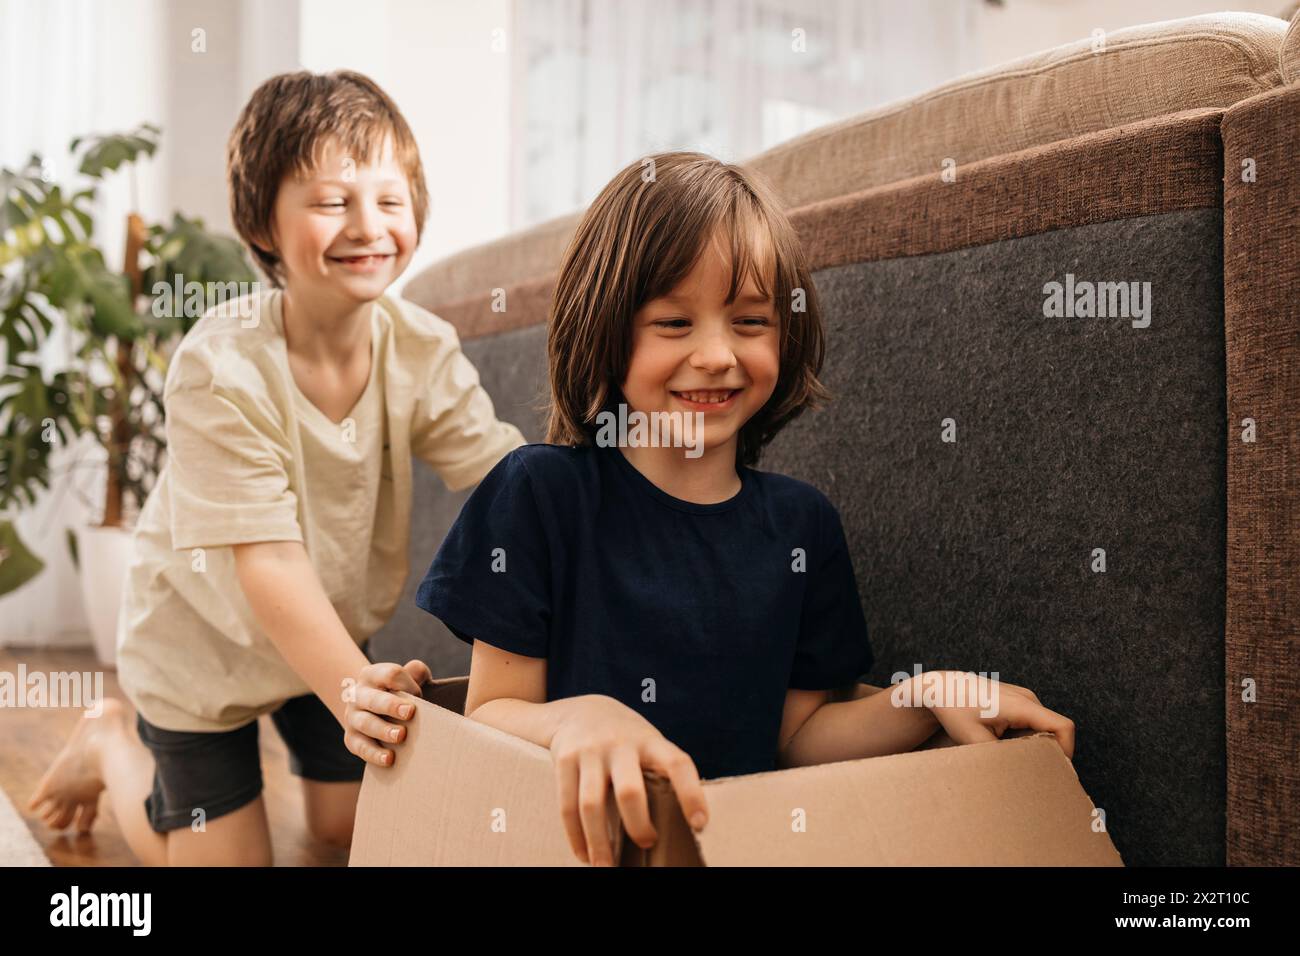 Ein glücklicher Junge, der Bruder zu Hause in einem Pappkarton sitzt Stockfoto